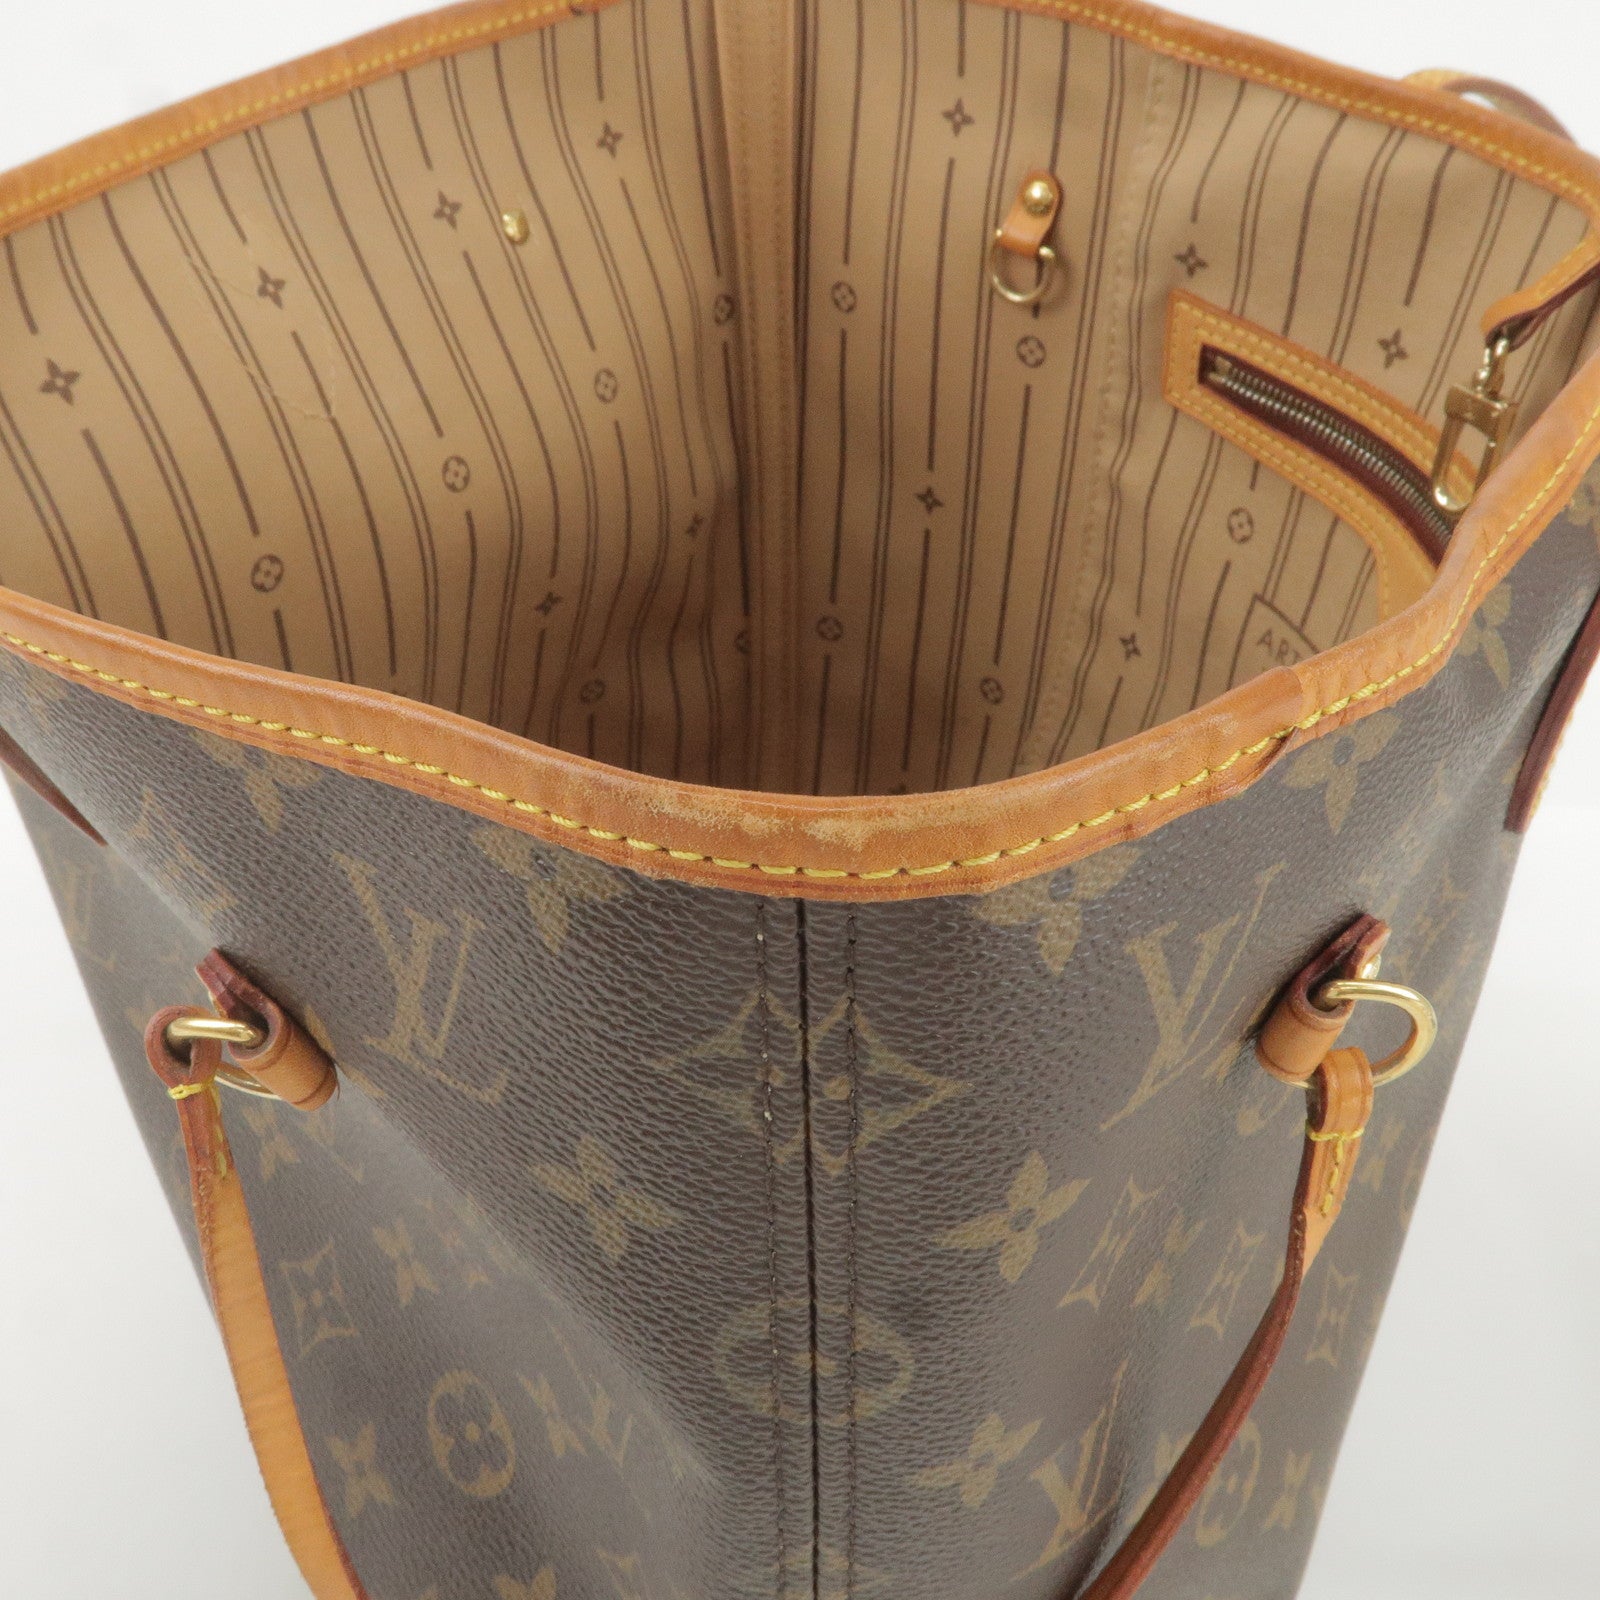 Louis Vuitton M40156 Neverfull Mm Shoulder Bag Monogram Canvas